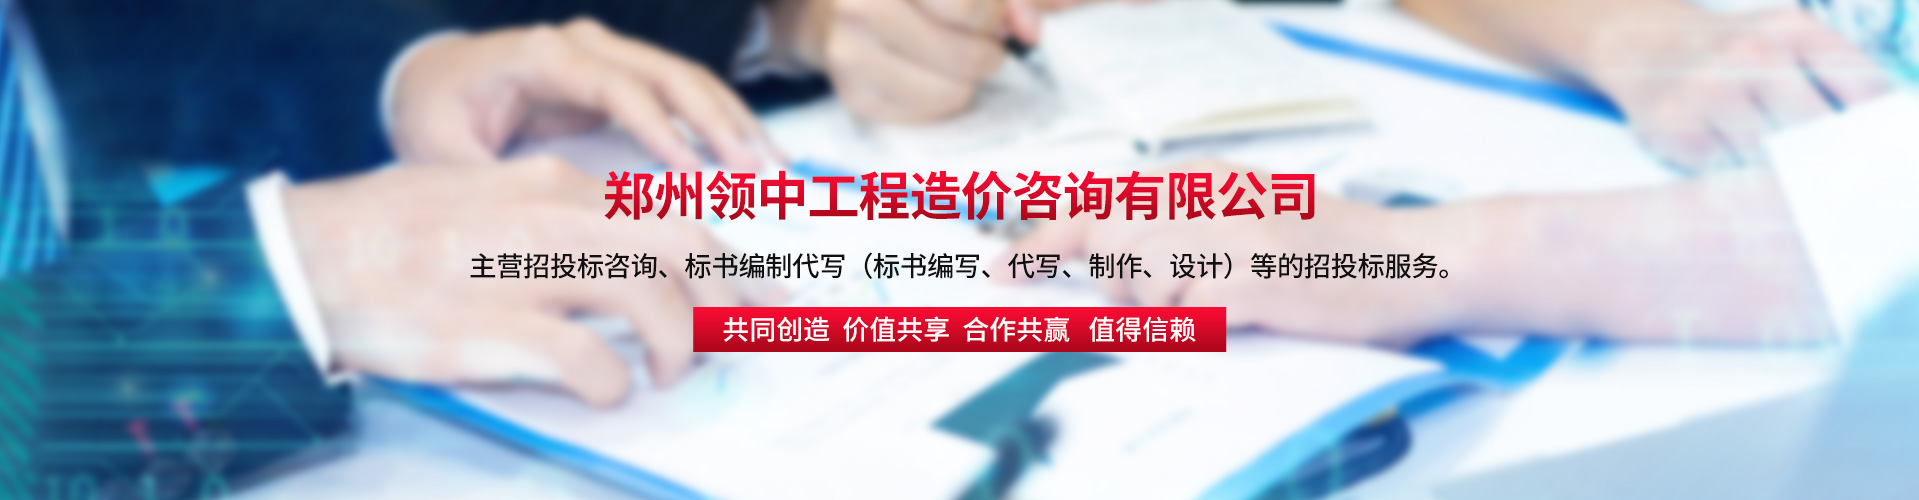 郑州 宣传片投标文件标书代写制作代做 迅速的帮助客户整理标书